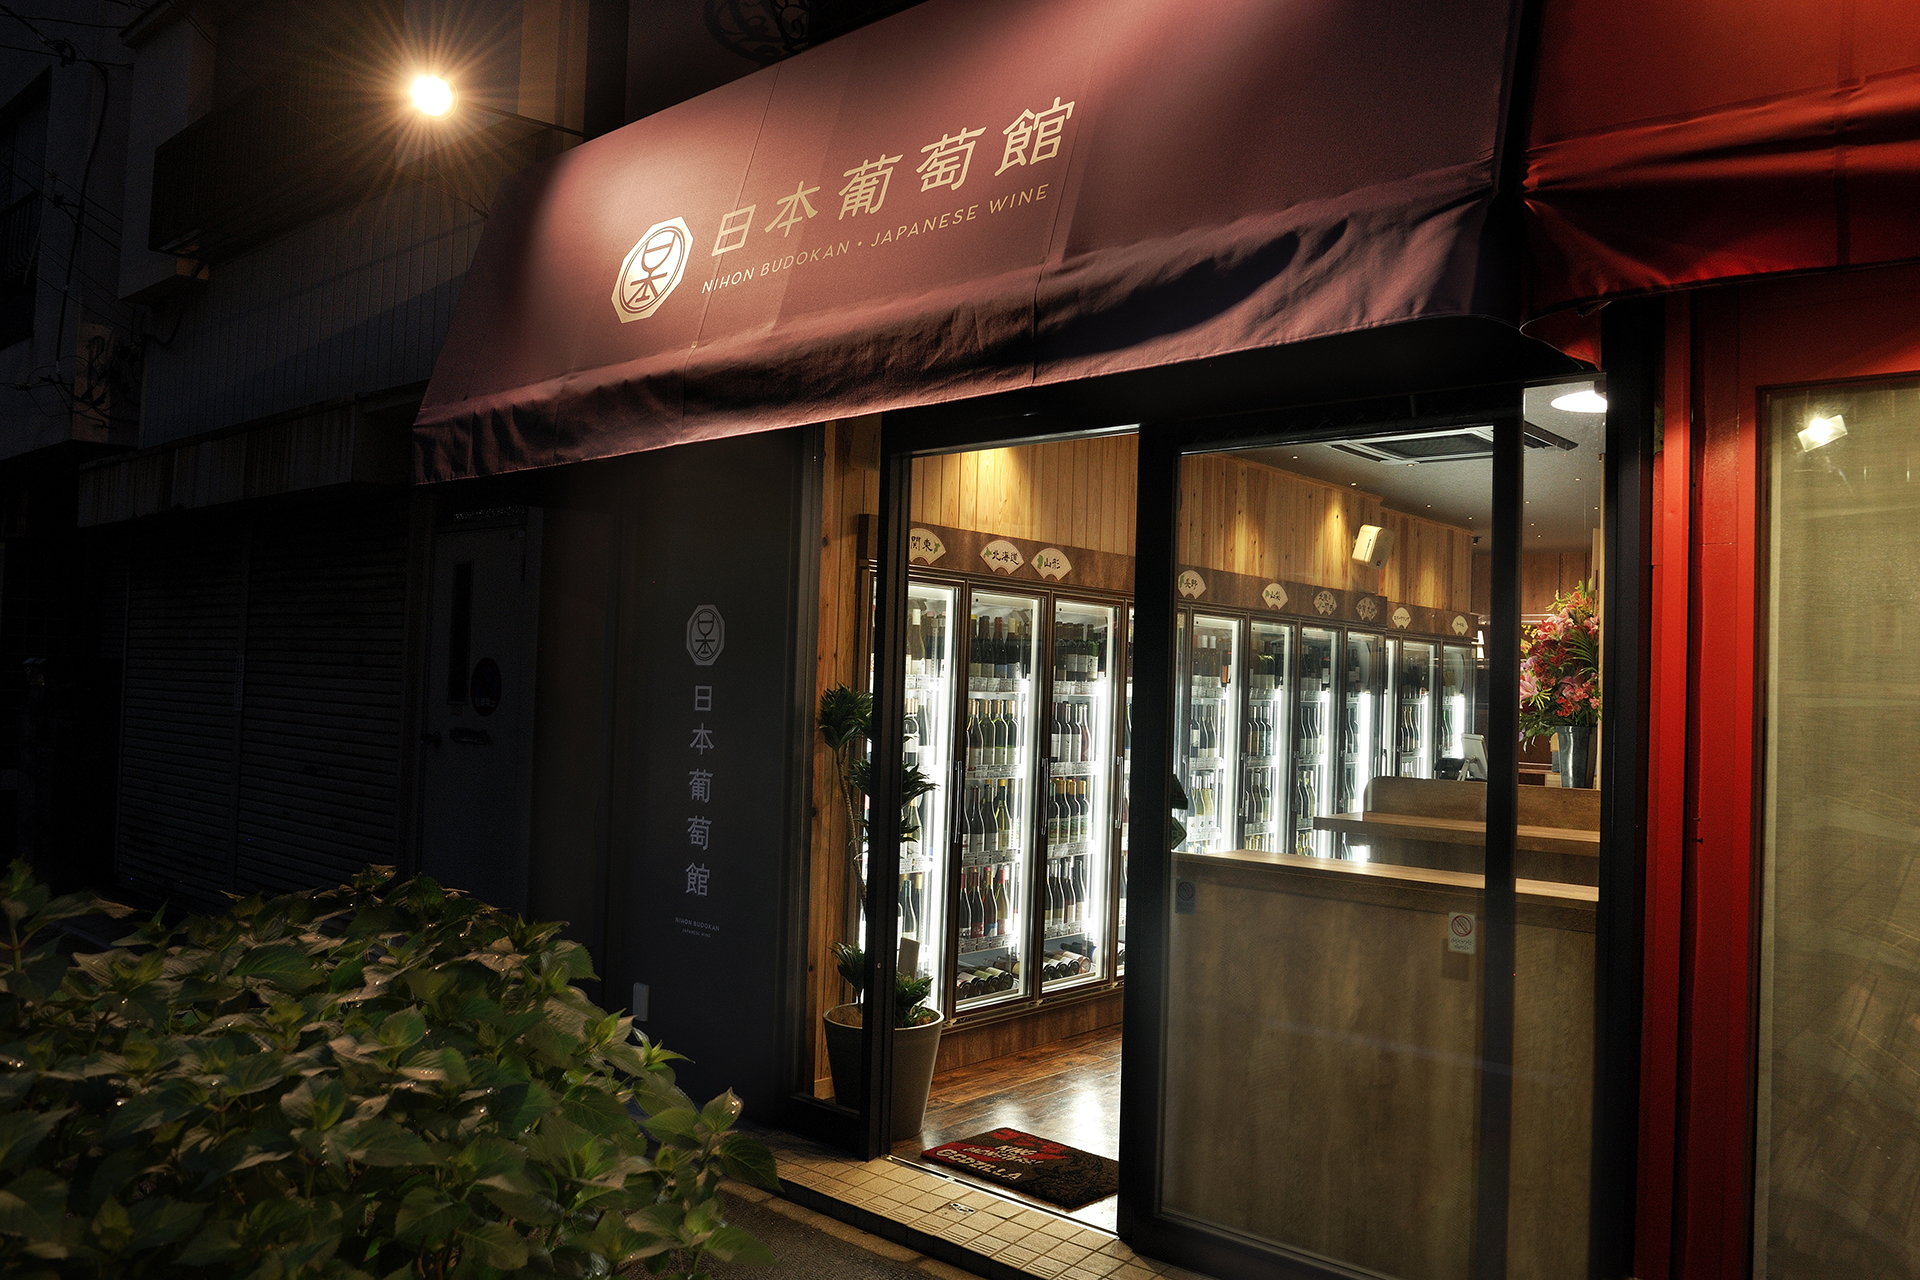 日本葡萄館店舗入口